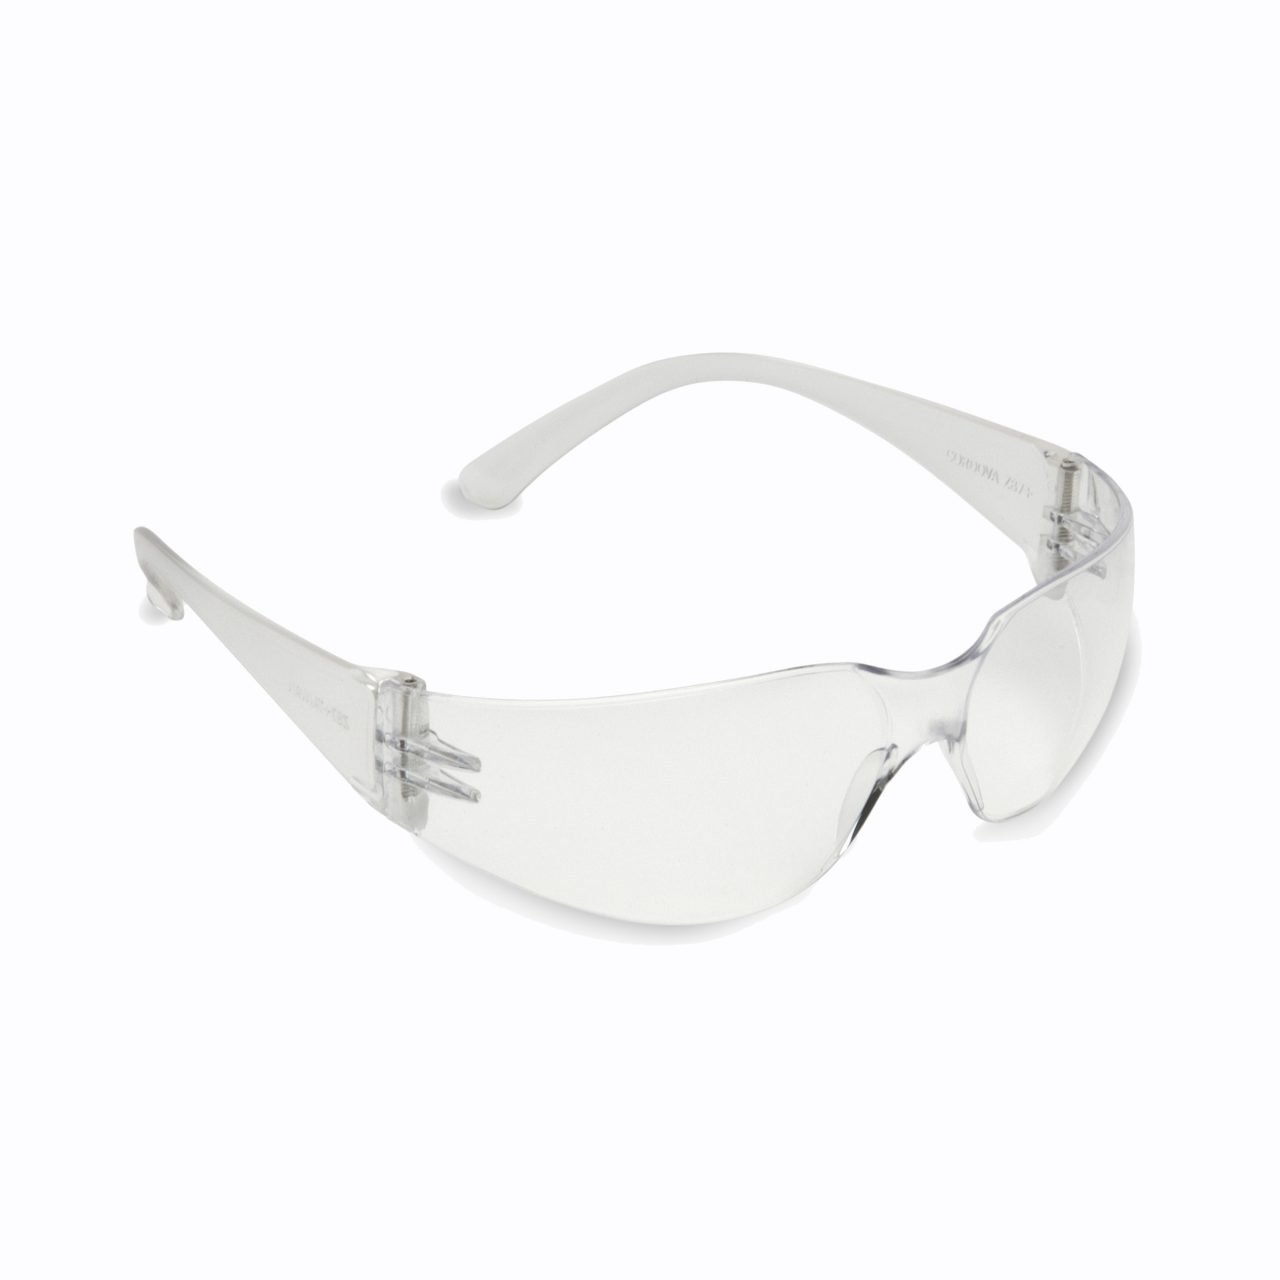 Cordova Bulldog Safety Glasses - SPEHF10S